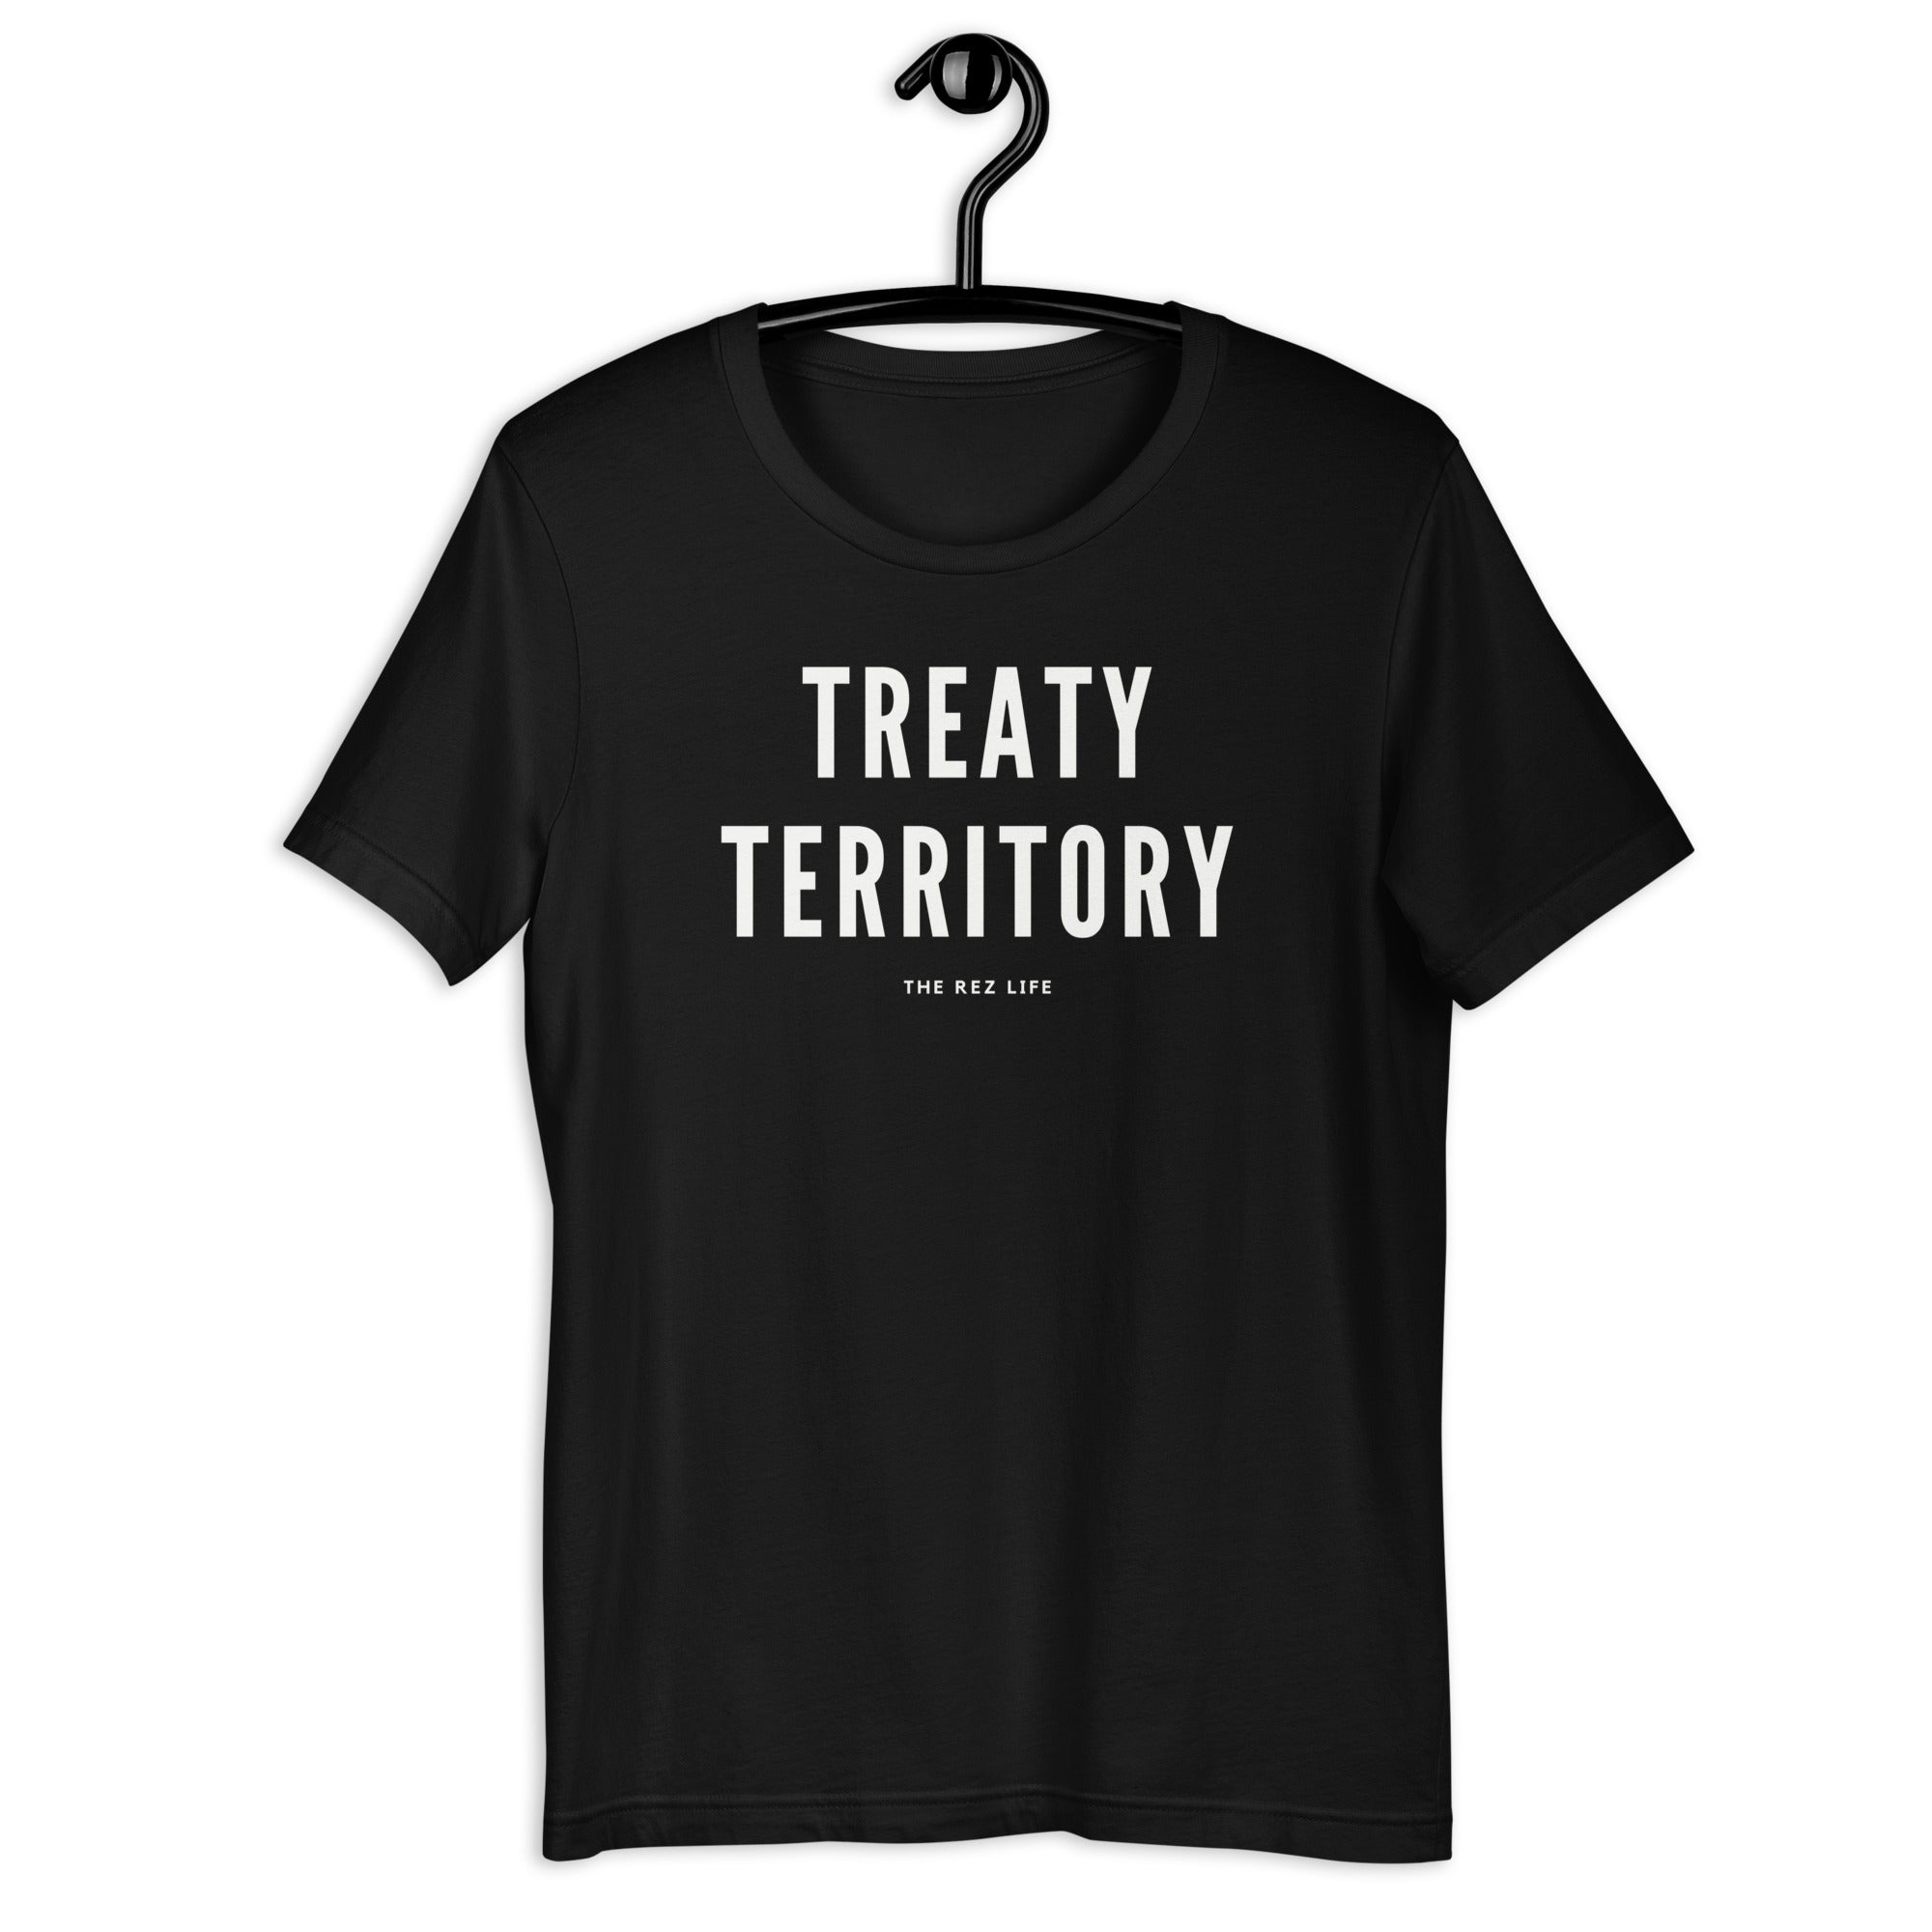 Welcome to TREATY TERRITORY! Tee